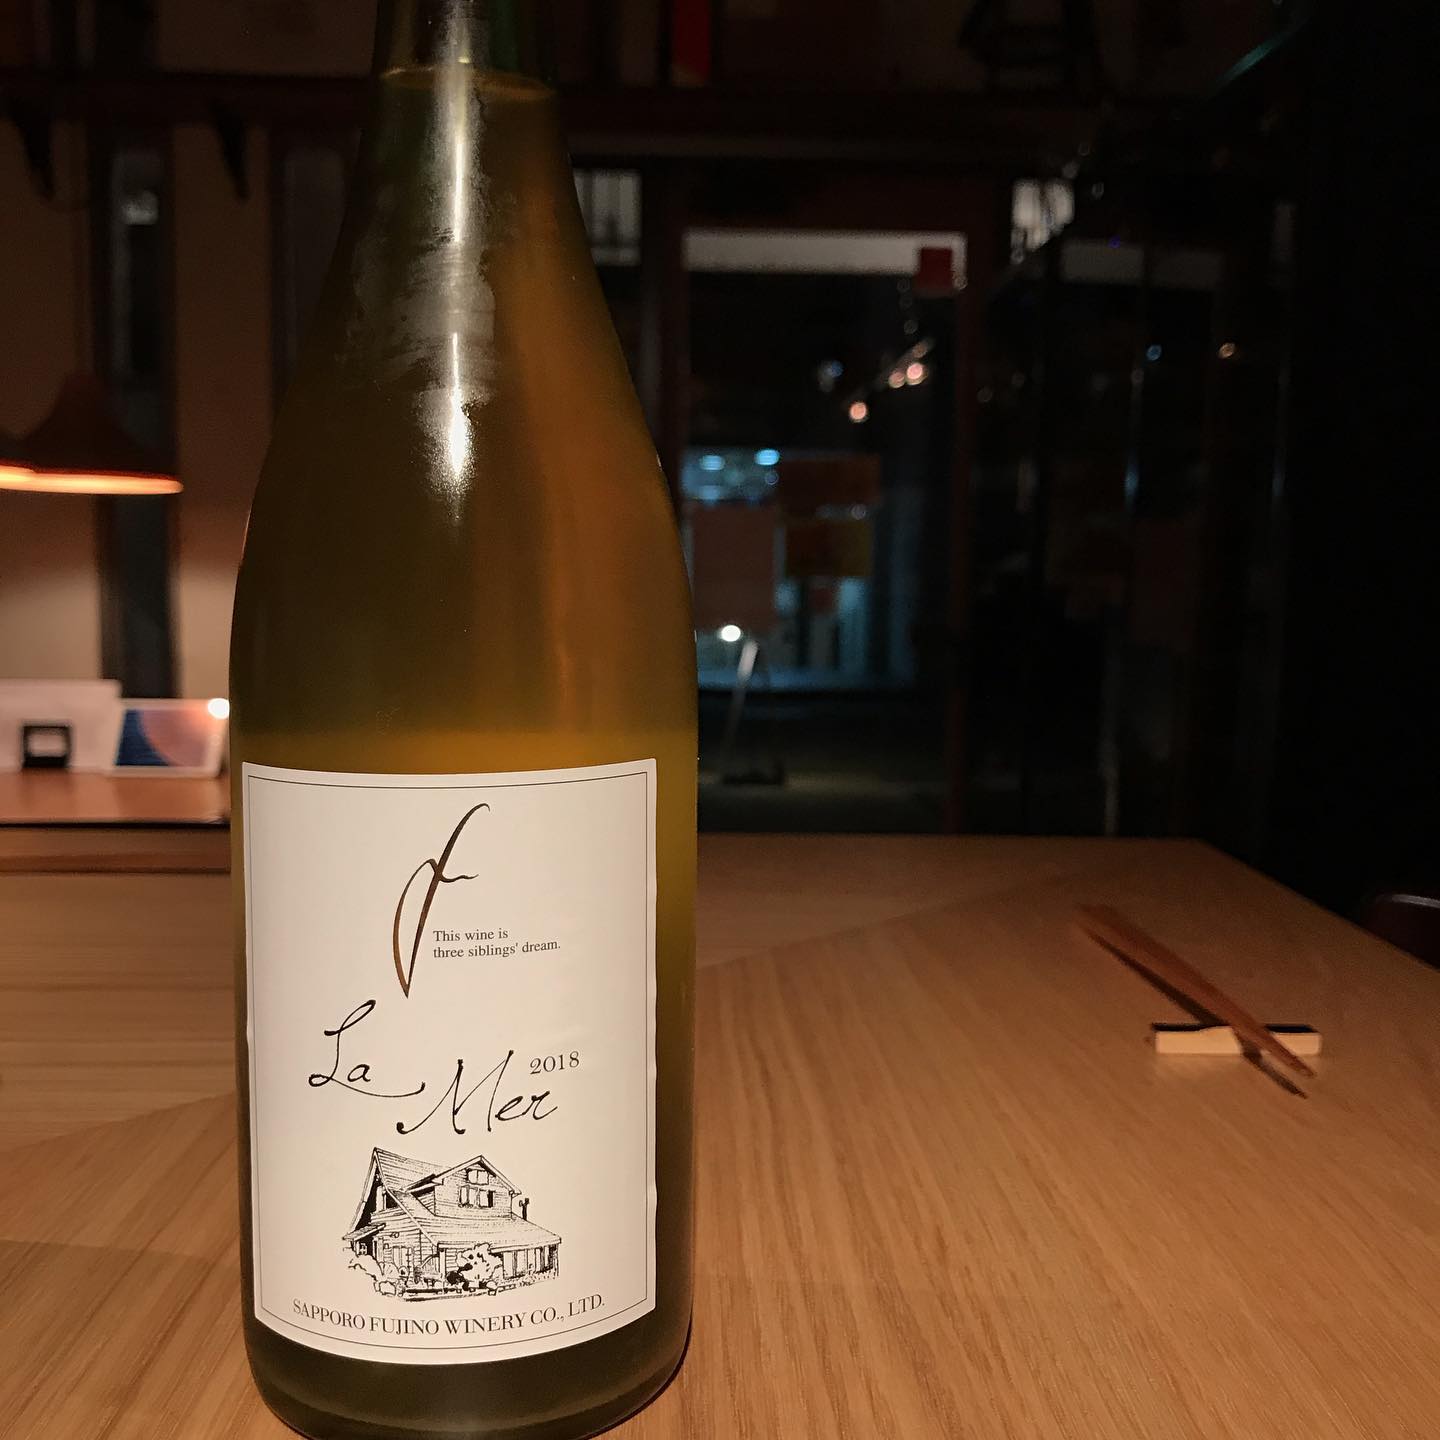 今日11/25はグラスで北海道の日本ワイン開けてます。さっぽろ藤野ワイナリー「ラ・メール2018」爽やかなりマスカットやグレープフルーツのような香りが癒されますよー週明けはゆっくりしてます。#イルフェソワフ #ワイン#日本酒 #薬院#警固#さっぽろ藤野ワイナリー